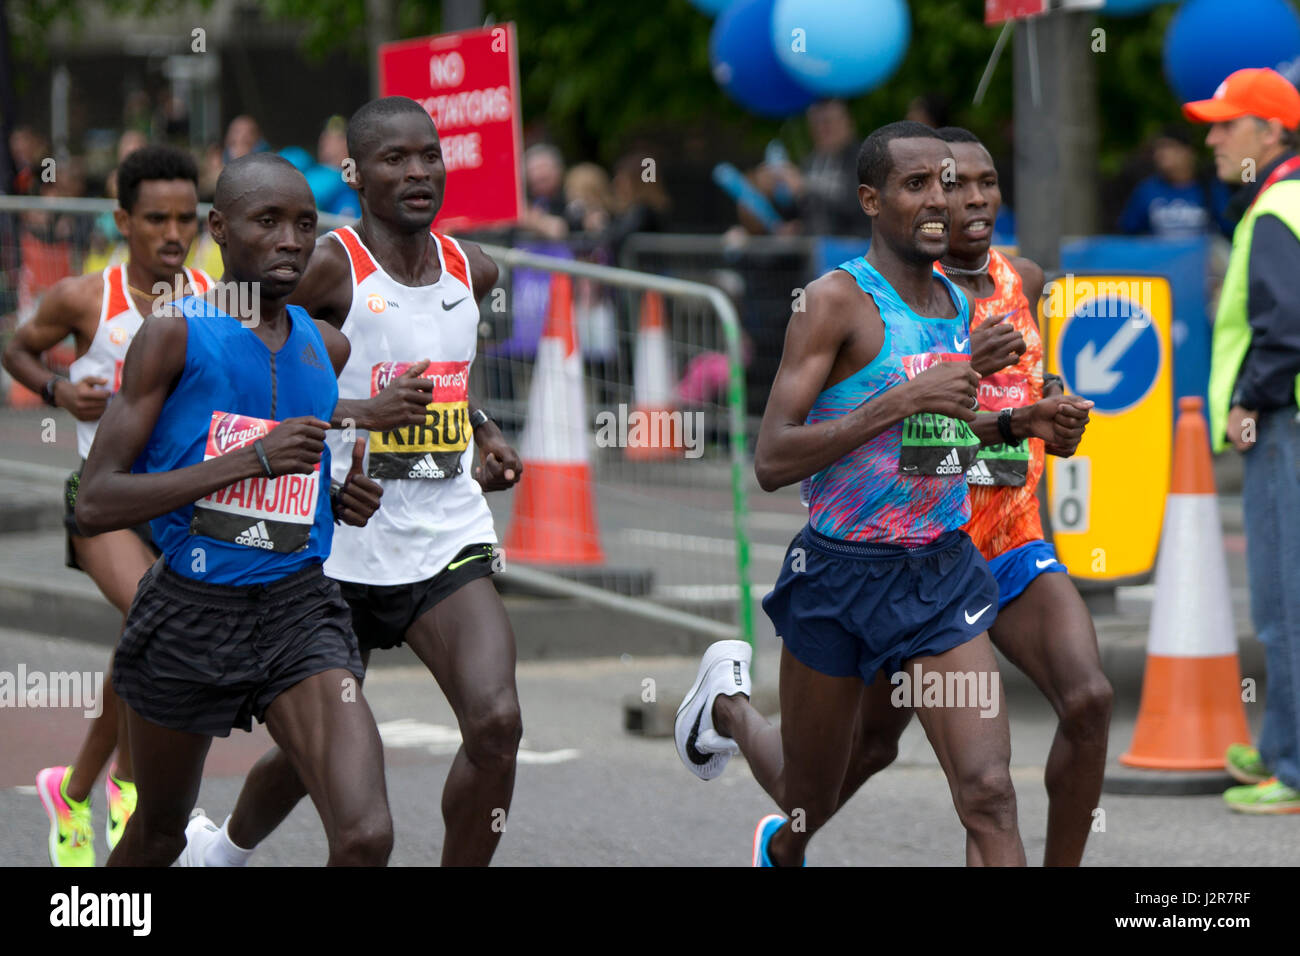 Daniel Wanjiru, Abel Kirui, Tilahun Regassa, tournant dans la Vierge Argent Marathon de Londres 2017, l'Autoroute, Londres, Royaume-Uni. Banque D'Images